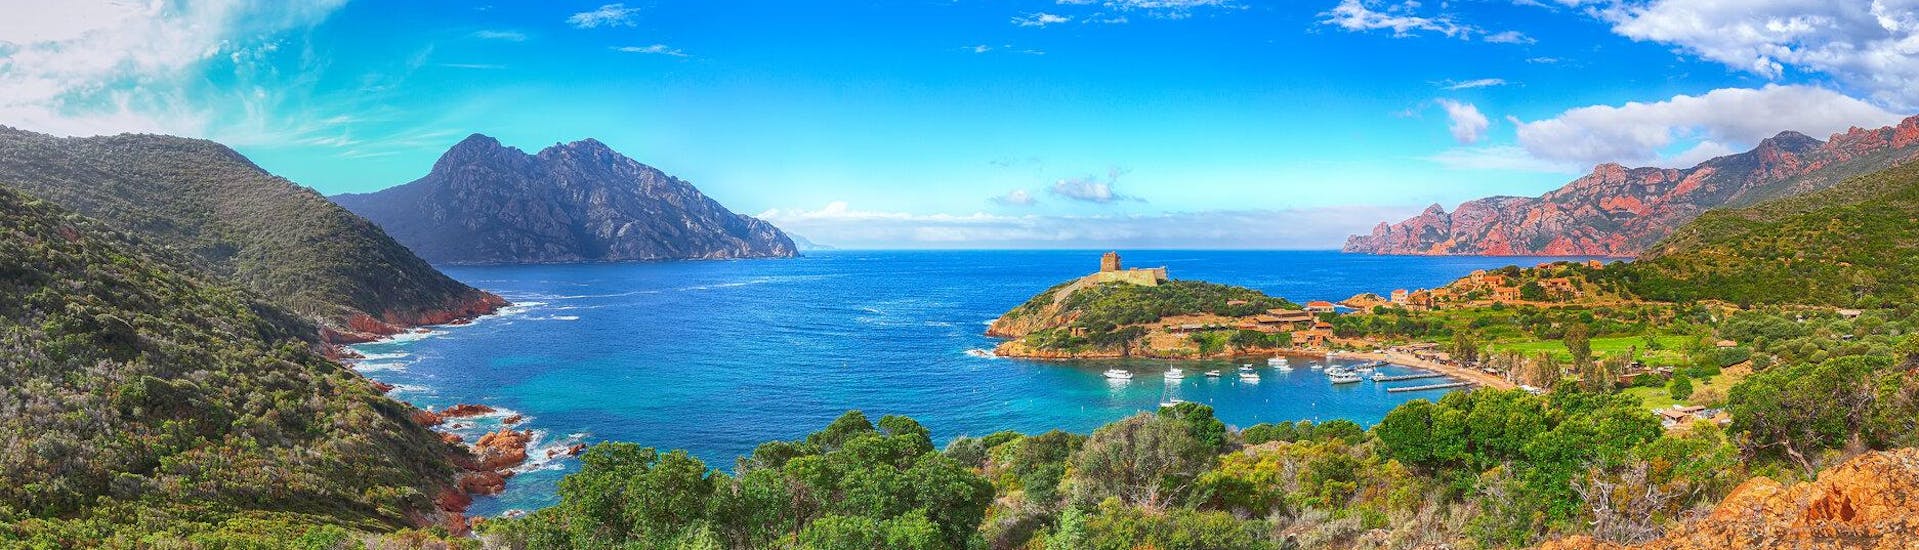 Vue de la baie de Girolata dans la réserve naturelle de Scandola, qui est une destination populaire pour les balades en bateau en Corse.